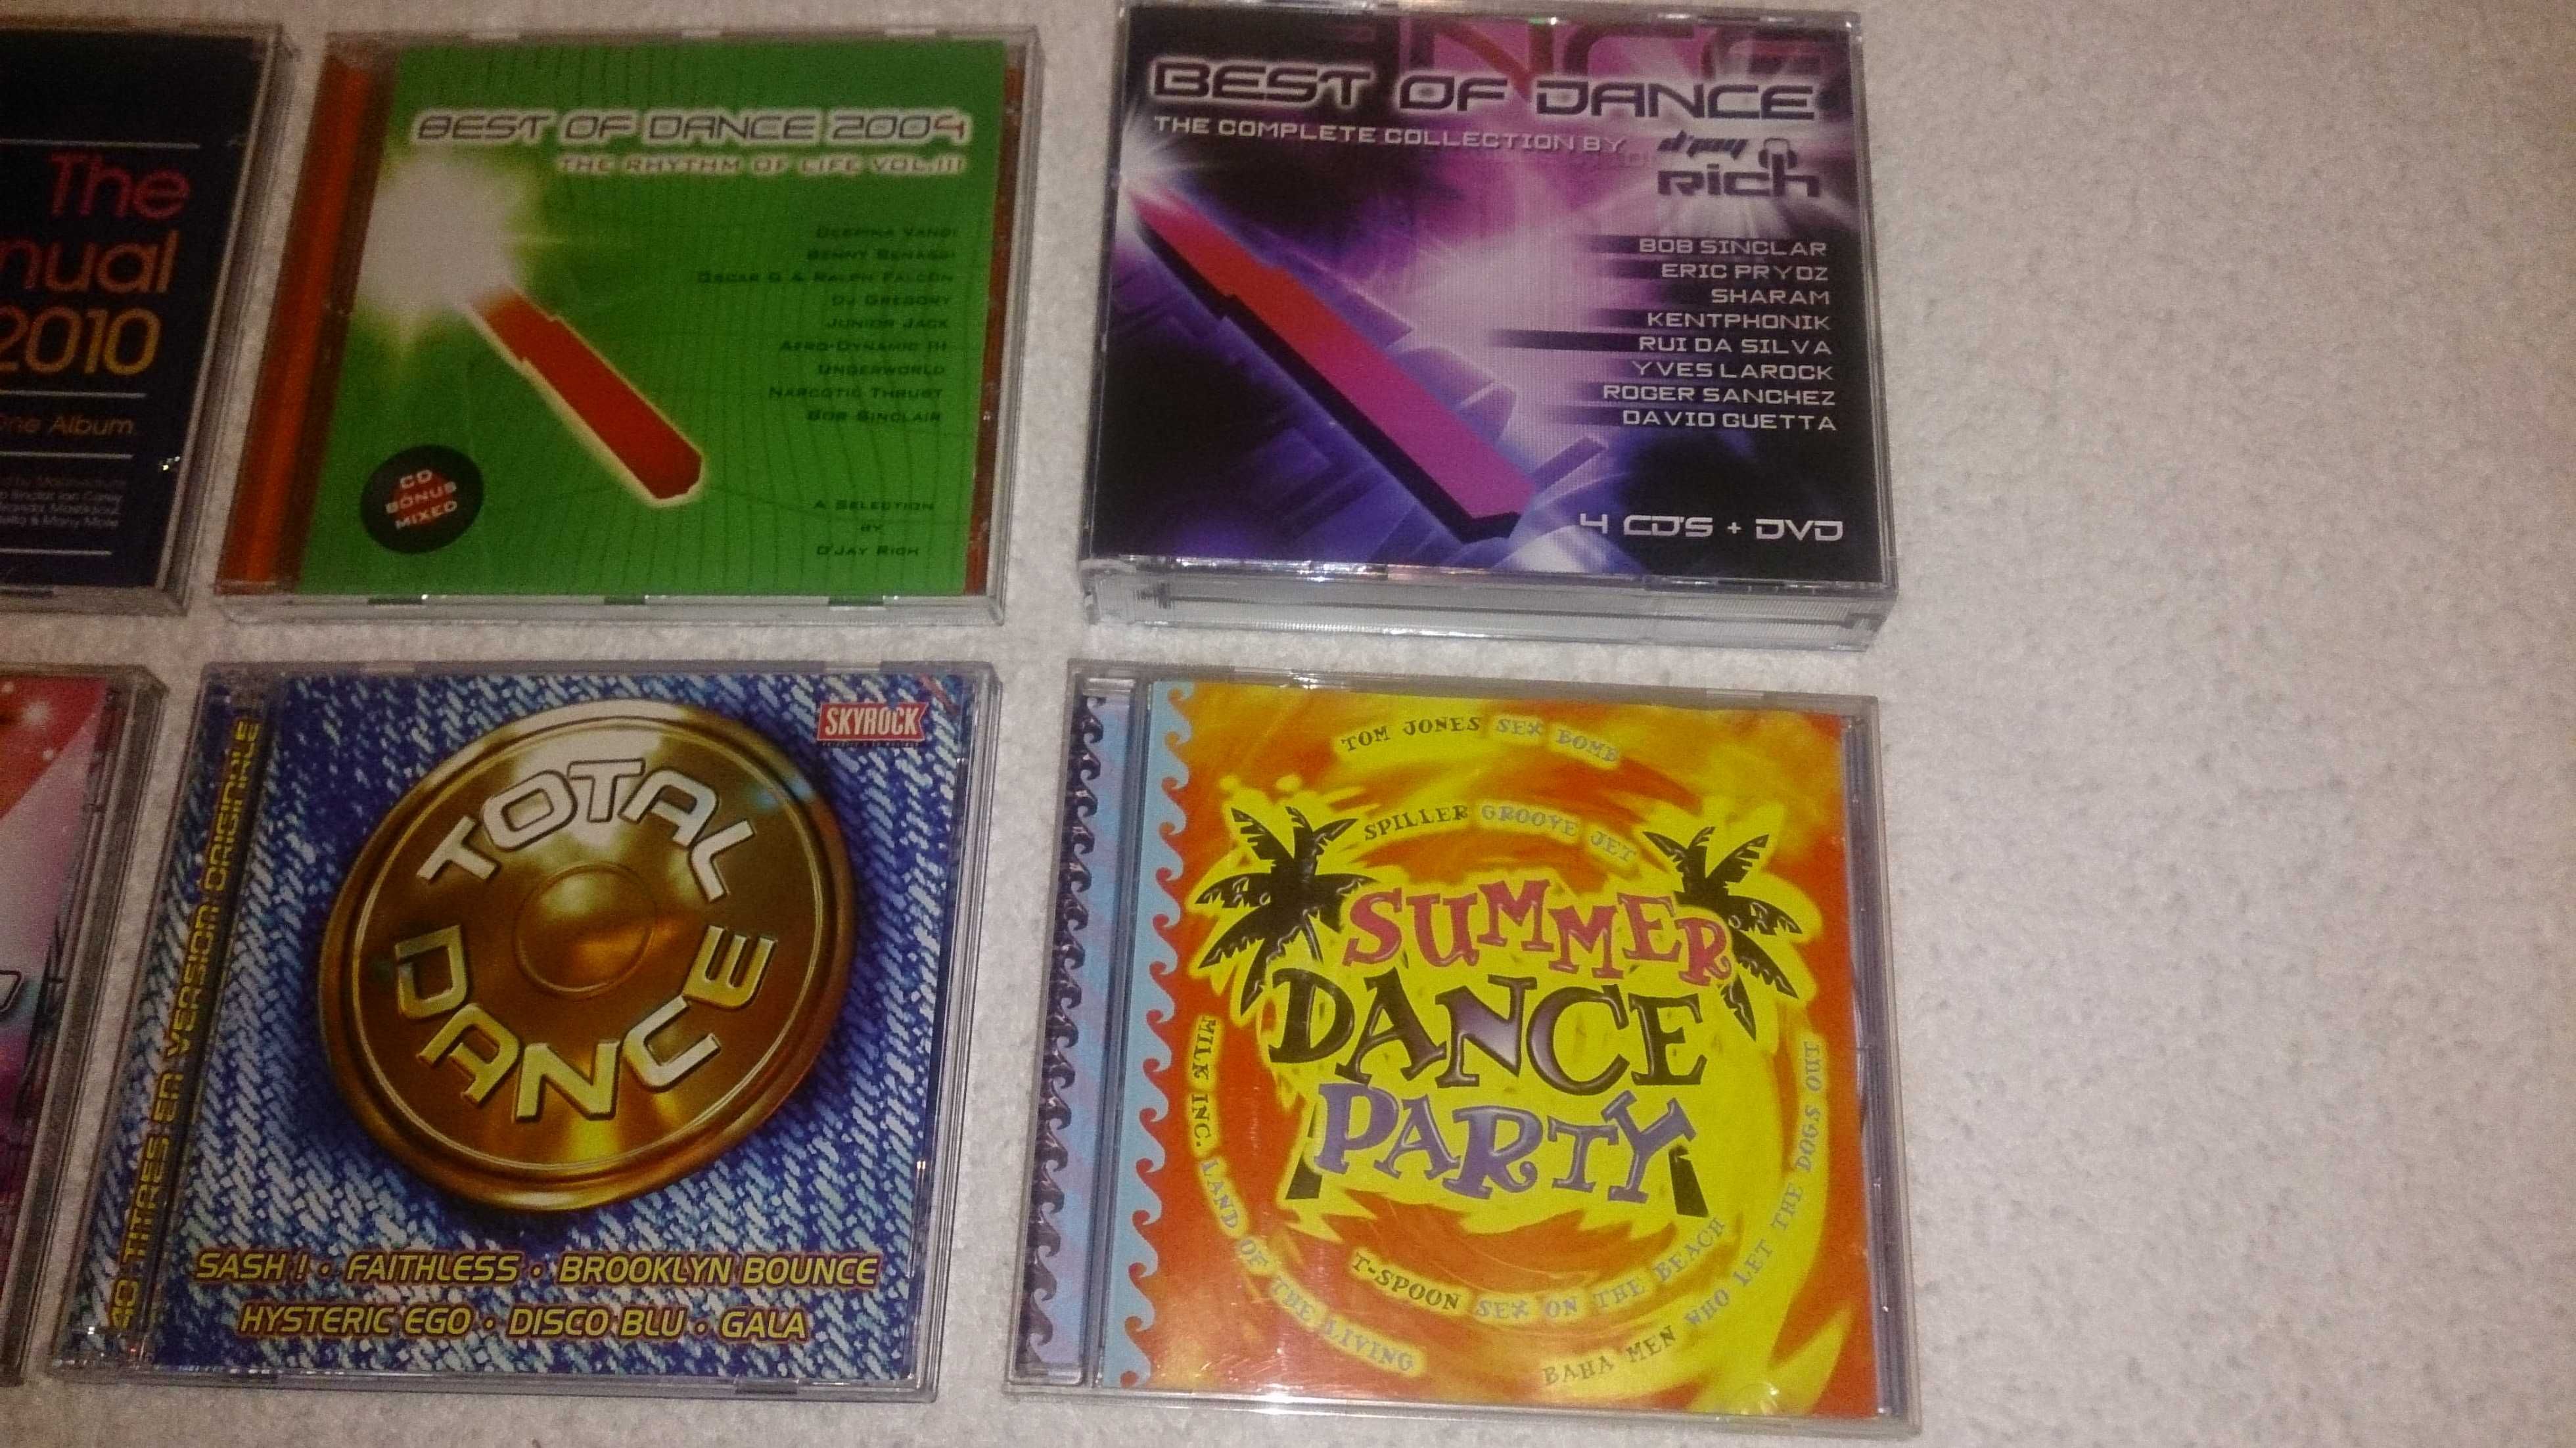 annual, decadance, tuning, summer, djs (música discoteca) vários cds